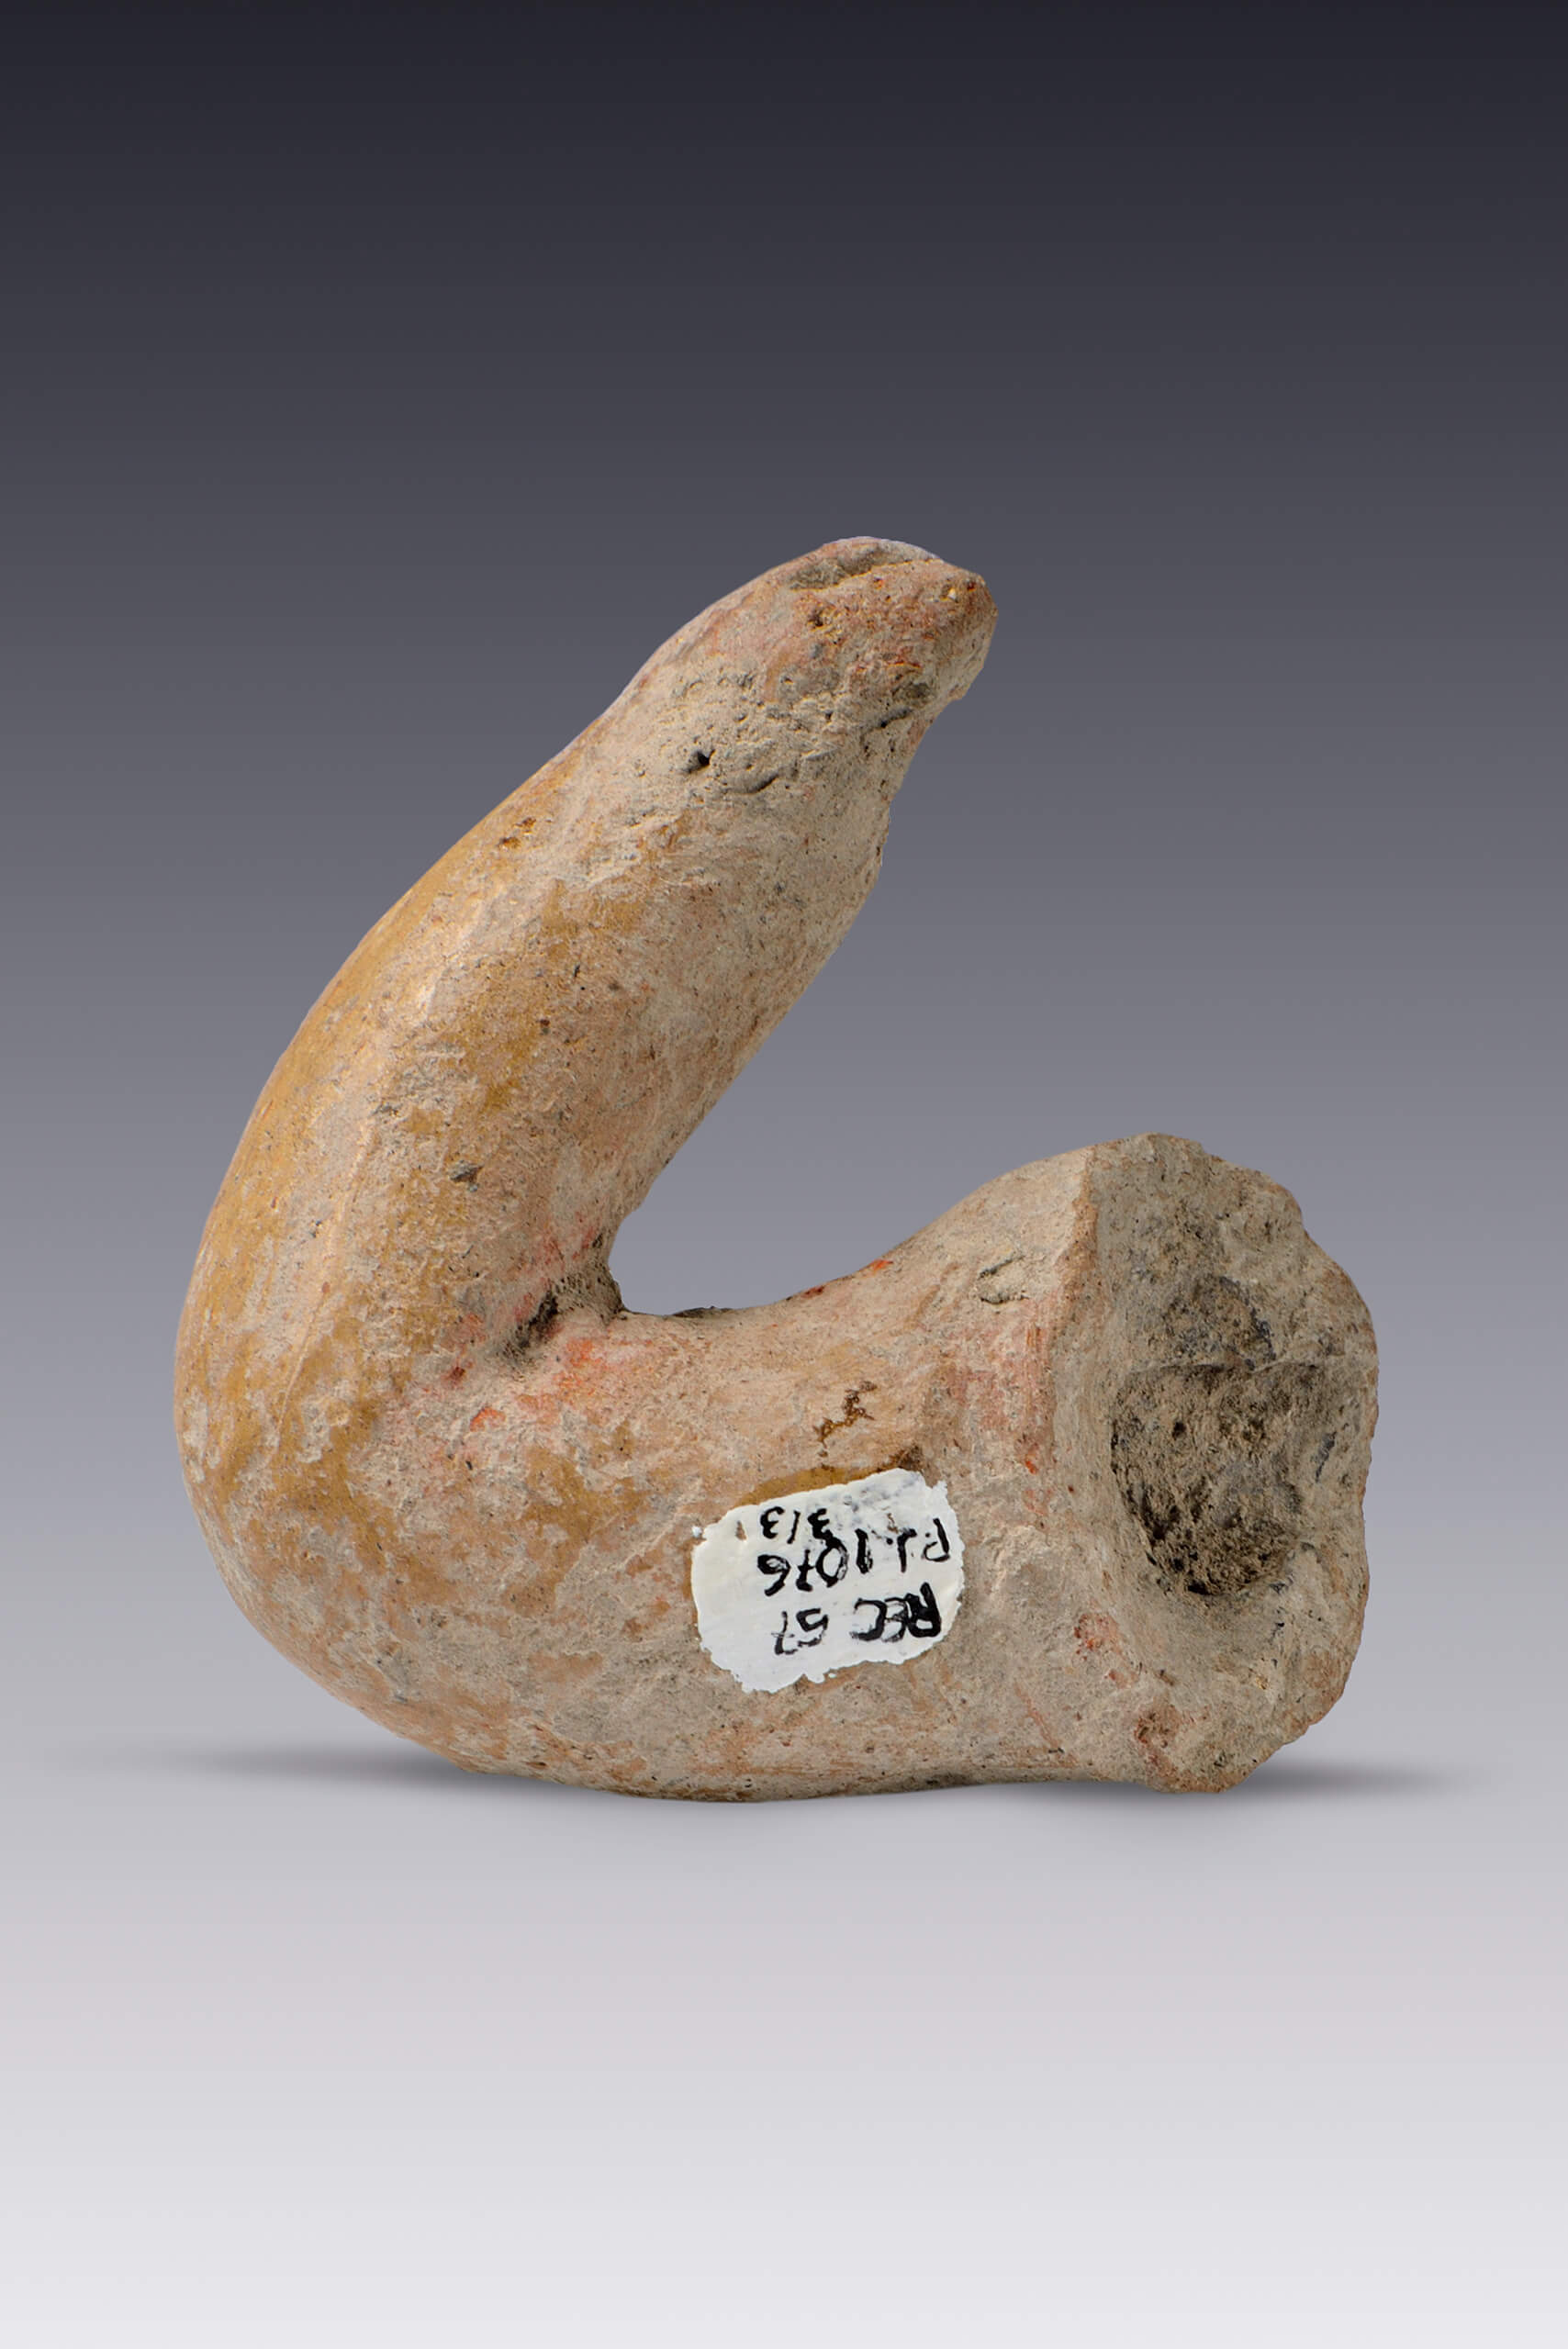 Piernas y brazo de figurillas | El tiempo en las cosas II. Salas de Arte Contemporáneo | Museo Amparo, Puebla